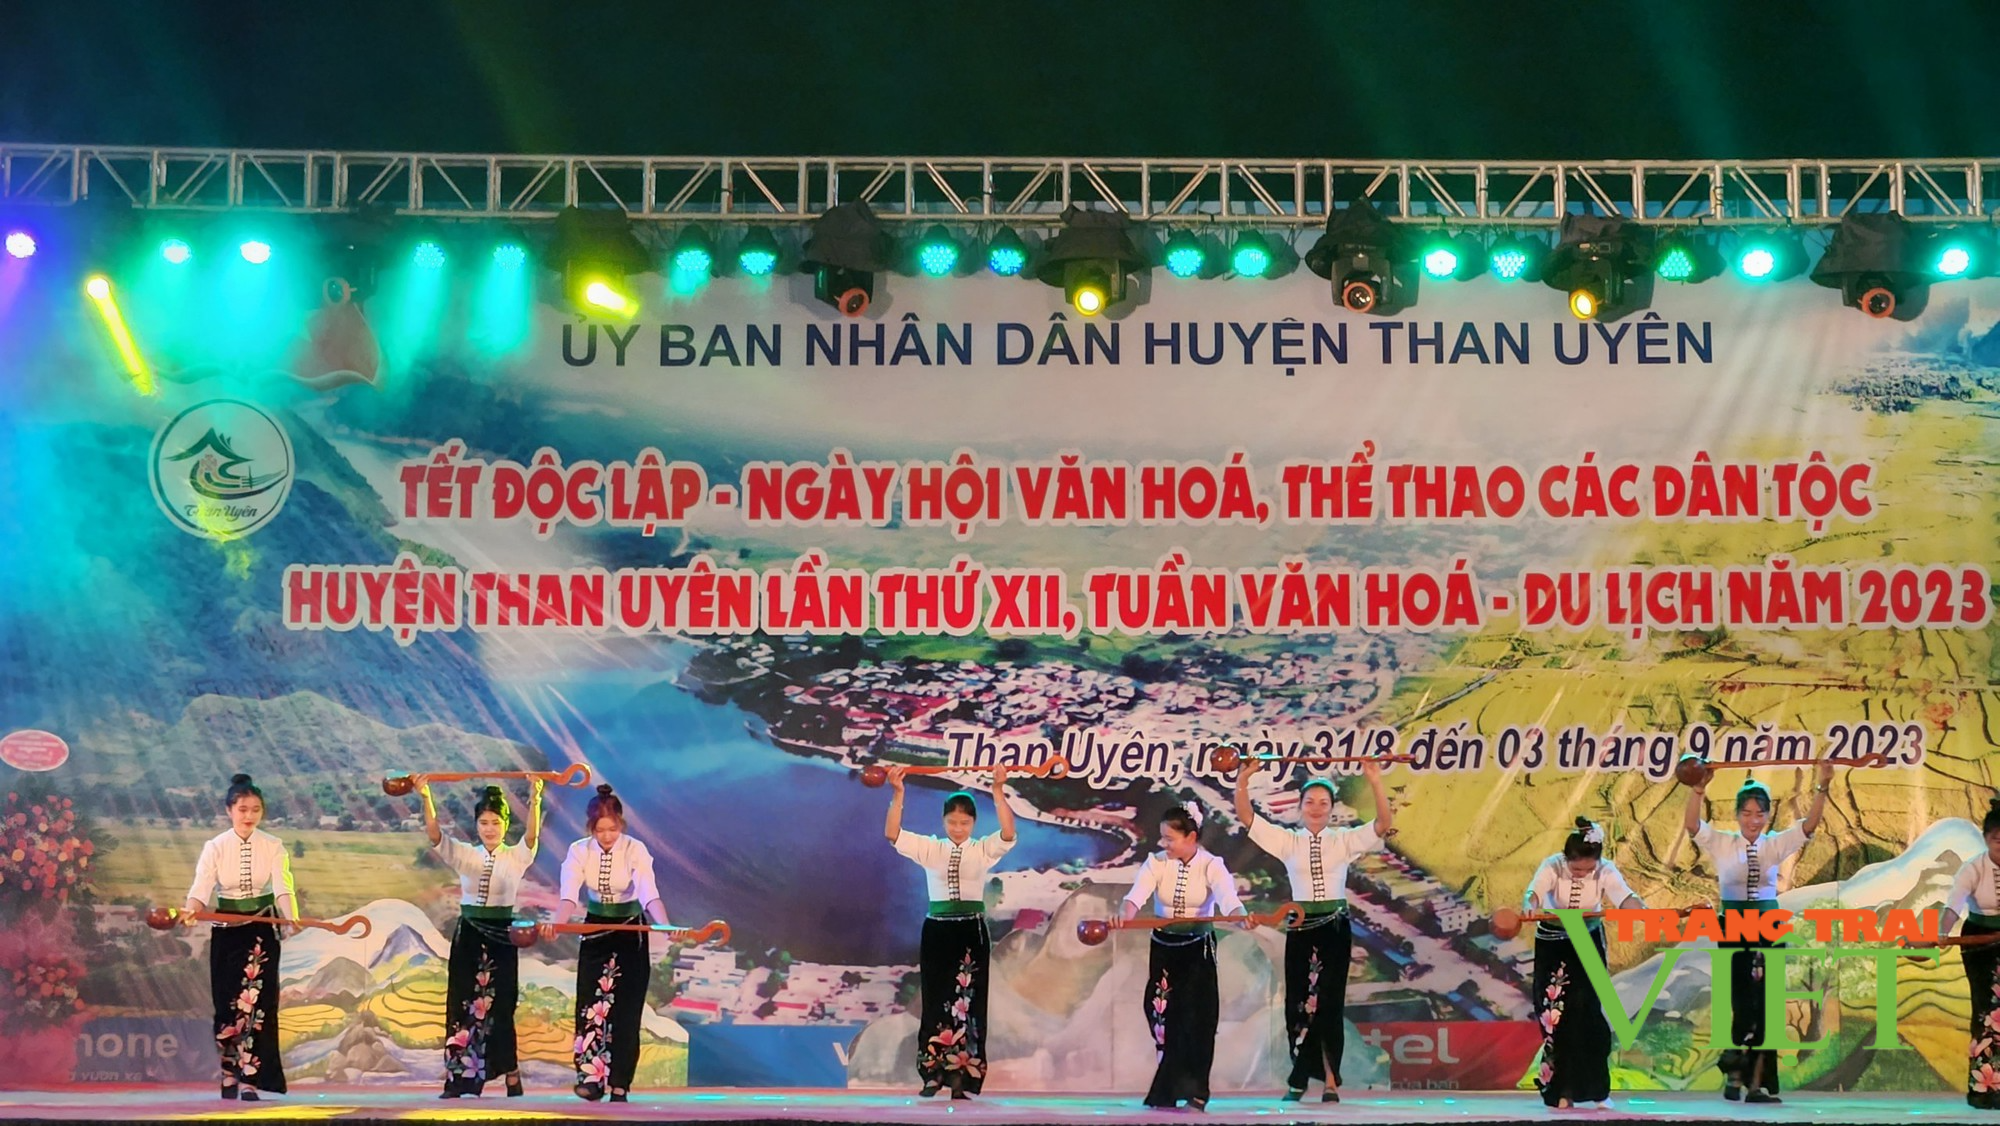 Lai Châu: Khai mạc chương trình nghệ thuật mừng tết Độc lập, Ngày hội Văn hóa, thể thao các dân tộc huyện Than Uyên - Ảnh 2.